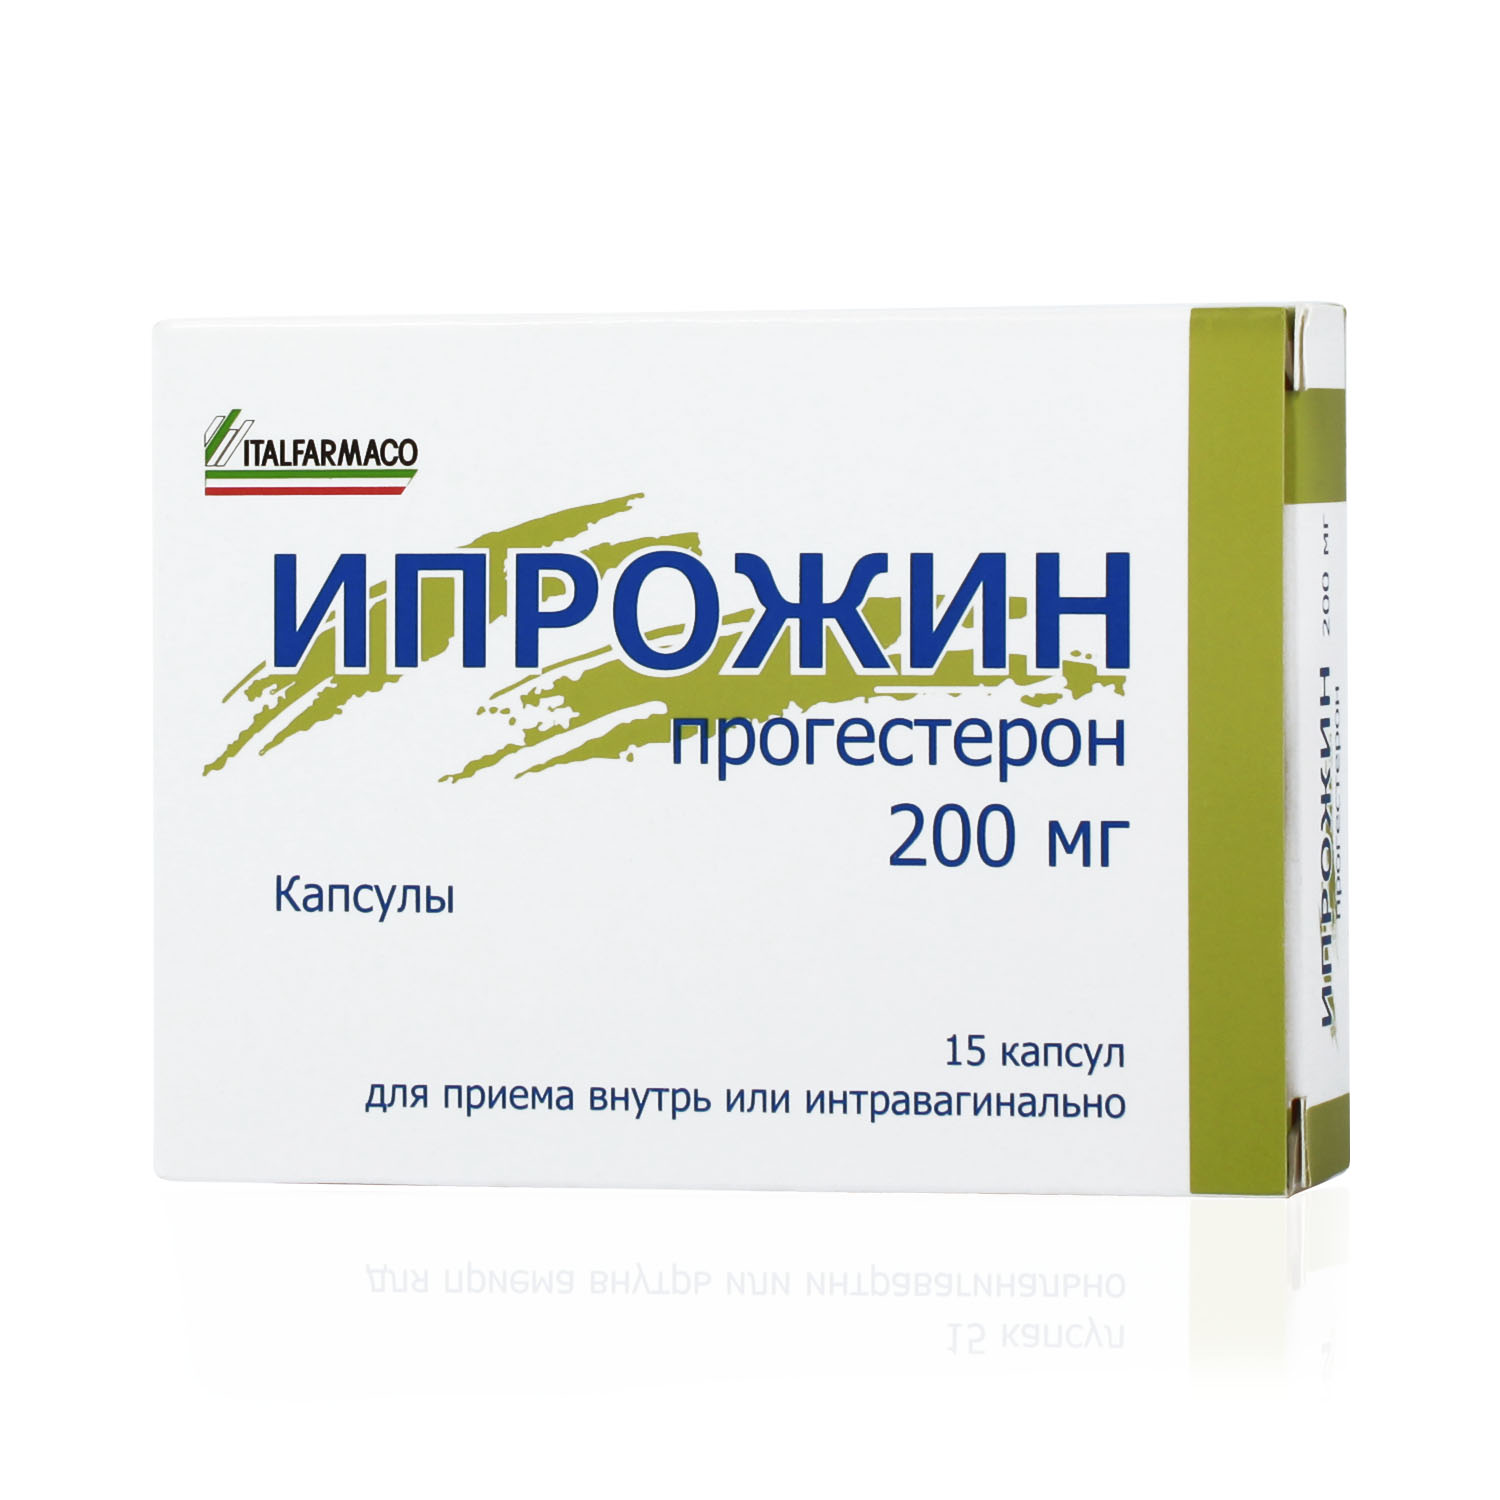 Ипрожин Капсулы 200 мг 15 шт  в Санкт-Петербурге, цена 413,0 руб .